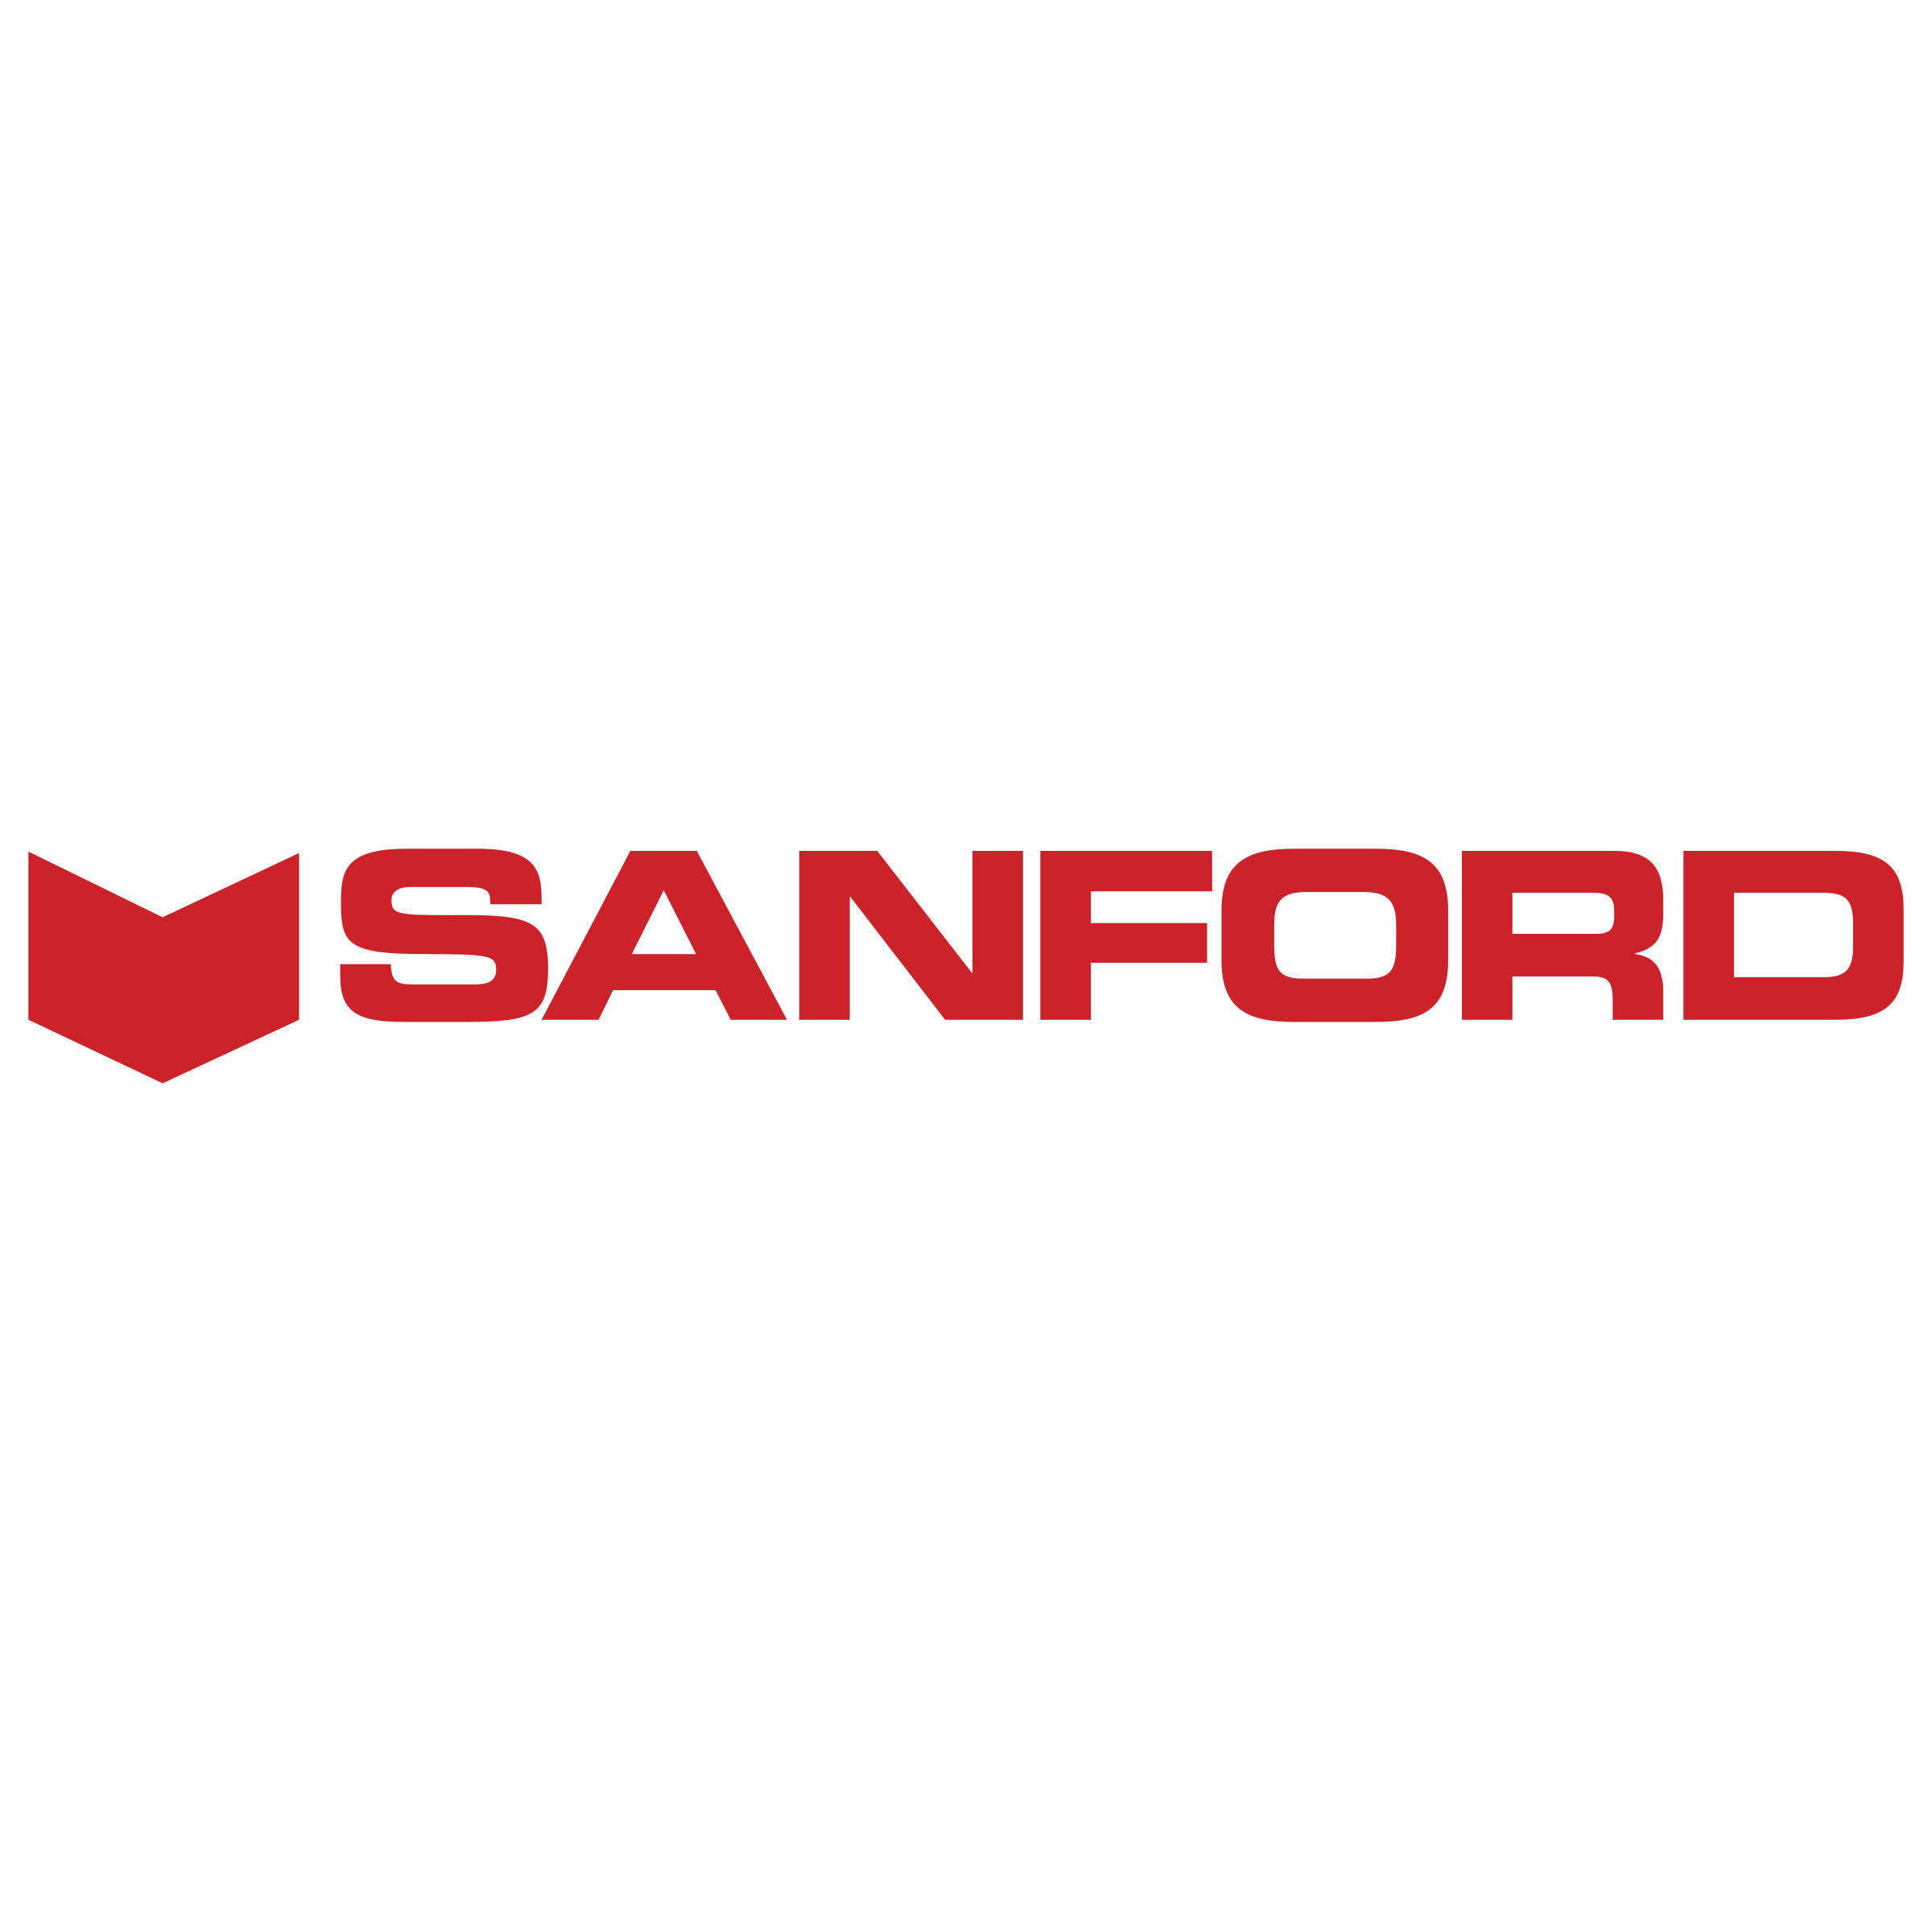 Sanford Logo - Sanford Logo PNG Transparent & SVG Vector - Freebie Supply